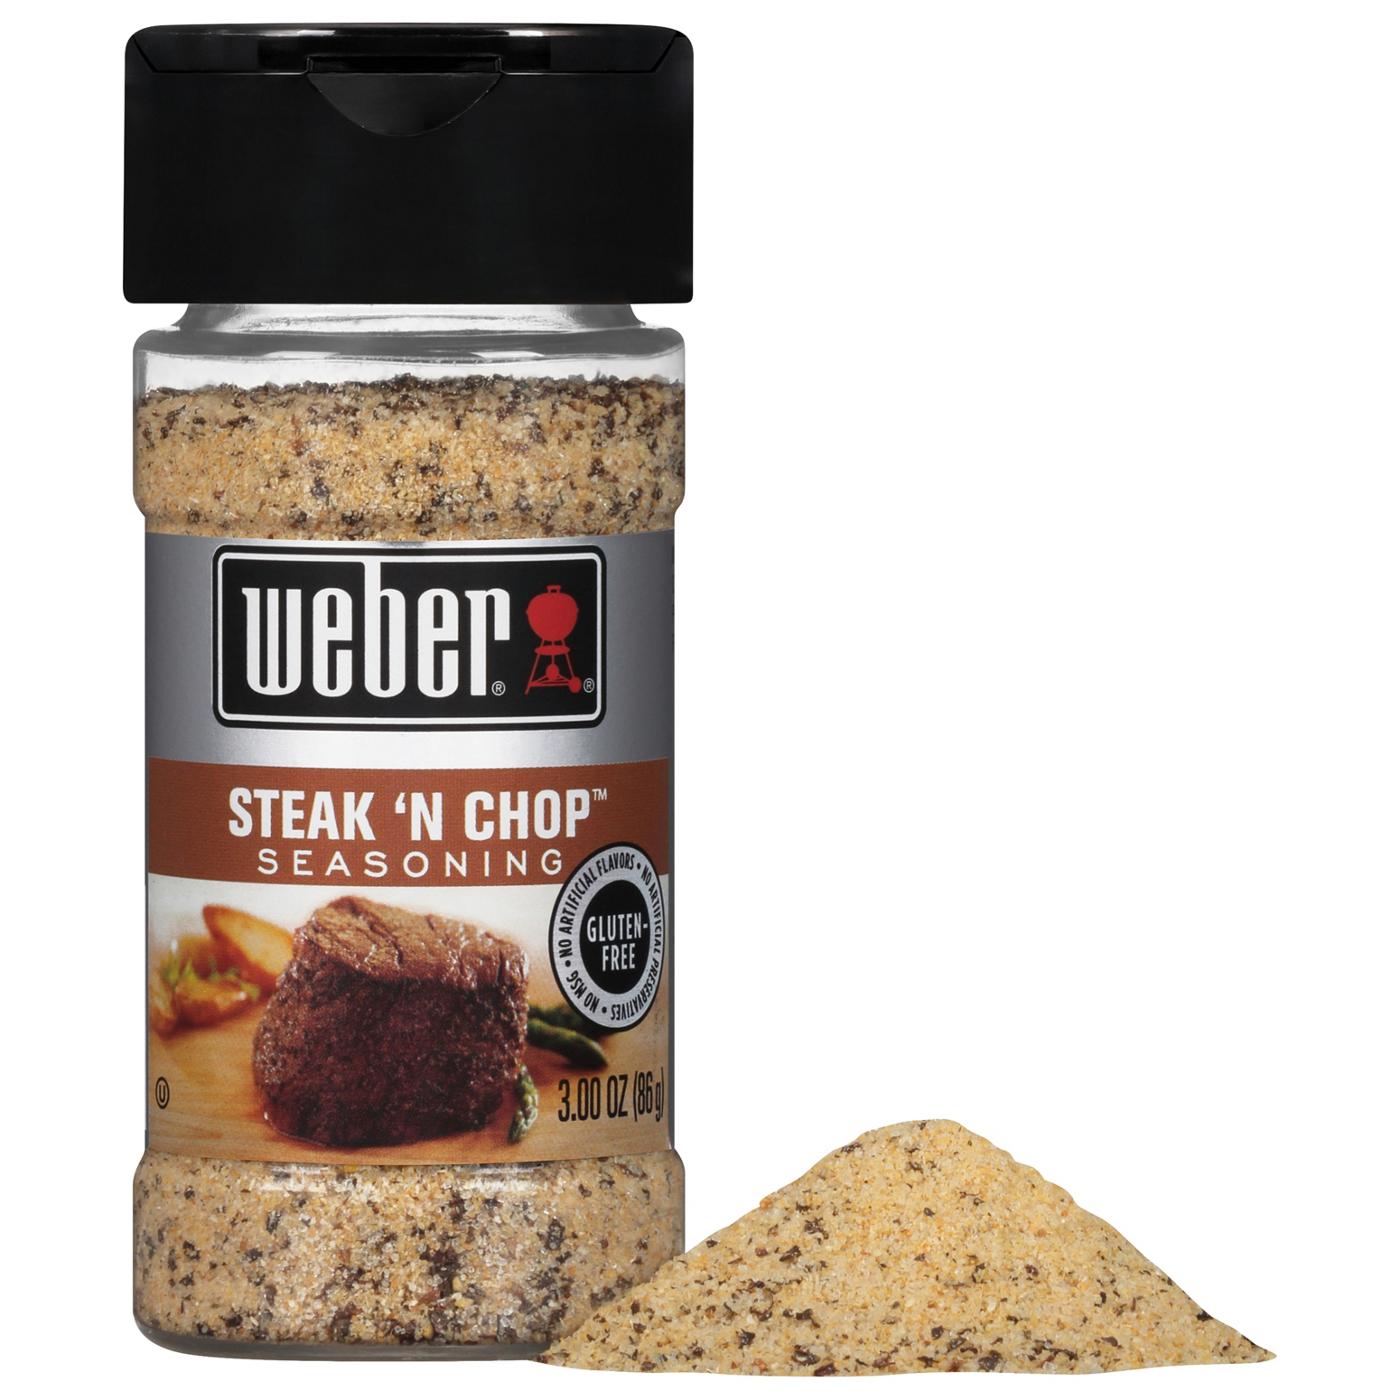 Weber Steak 'N Chop Seasoning; image 3 of 3